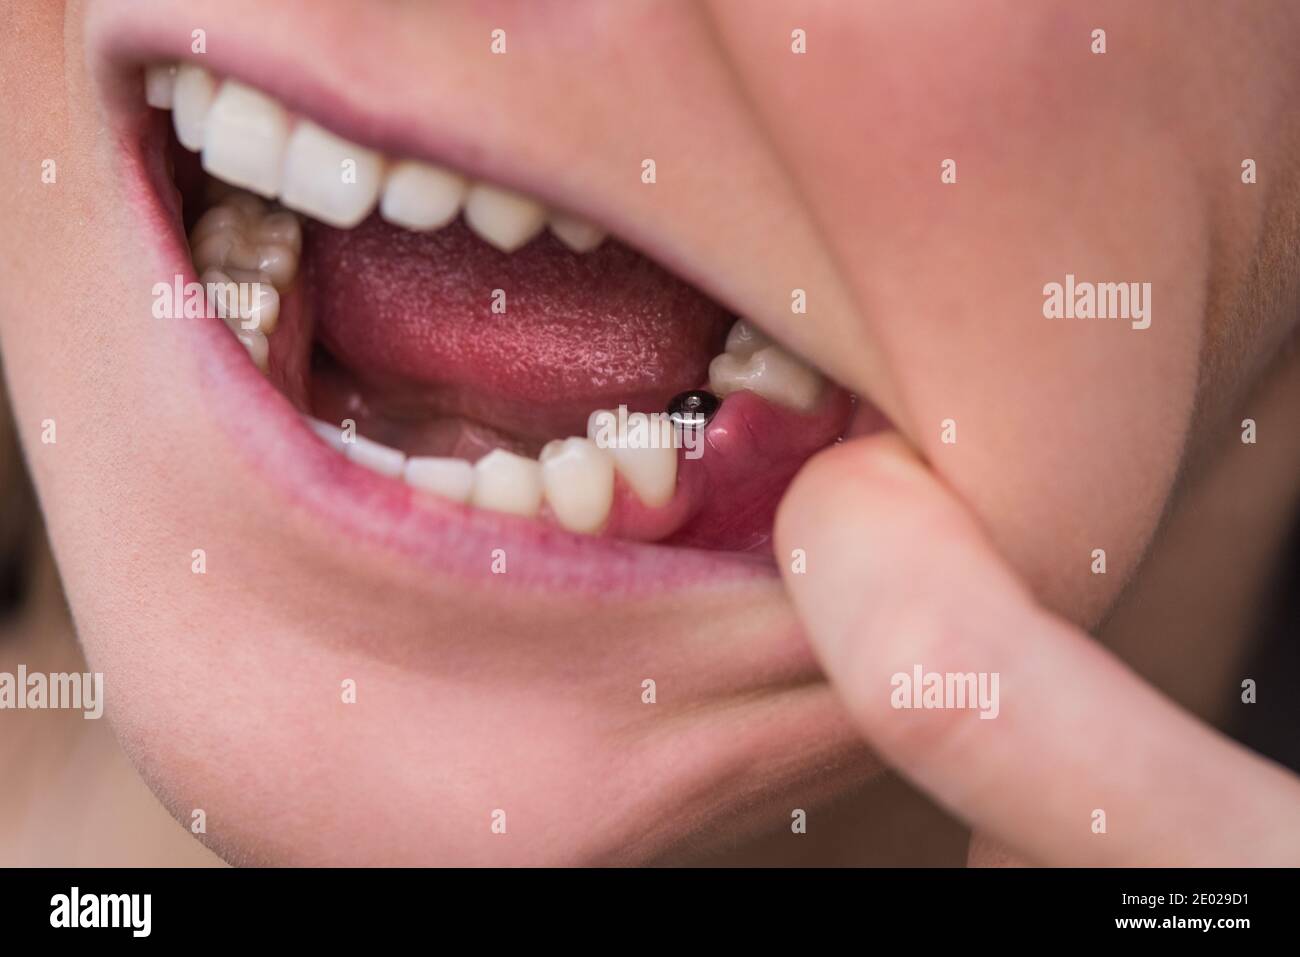 Closeup dell'impianto a dente singolo. Giovane donna senza dente sulla mascella inferiore. Dente mancante. Impianto dopo l'estrazione dei denti. Foto Stock